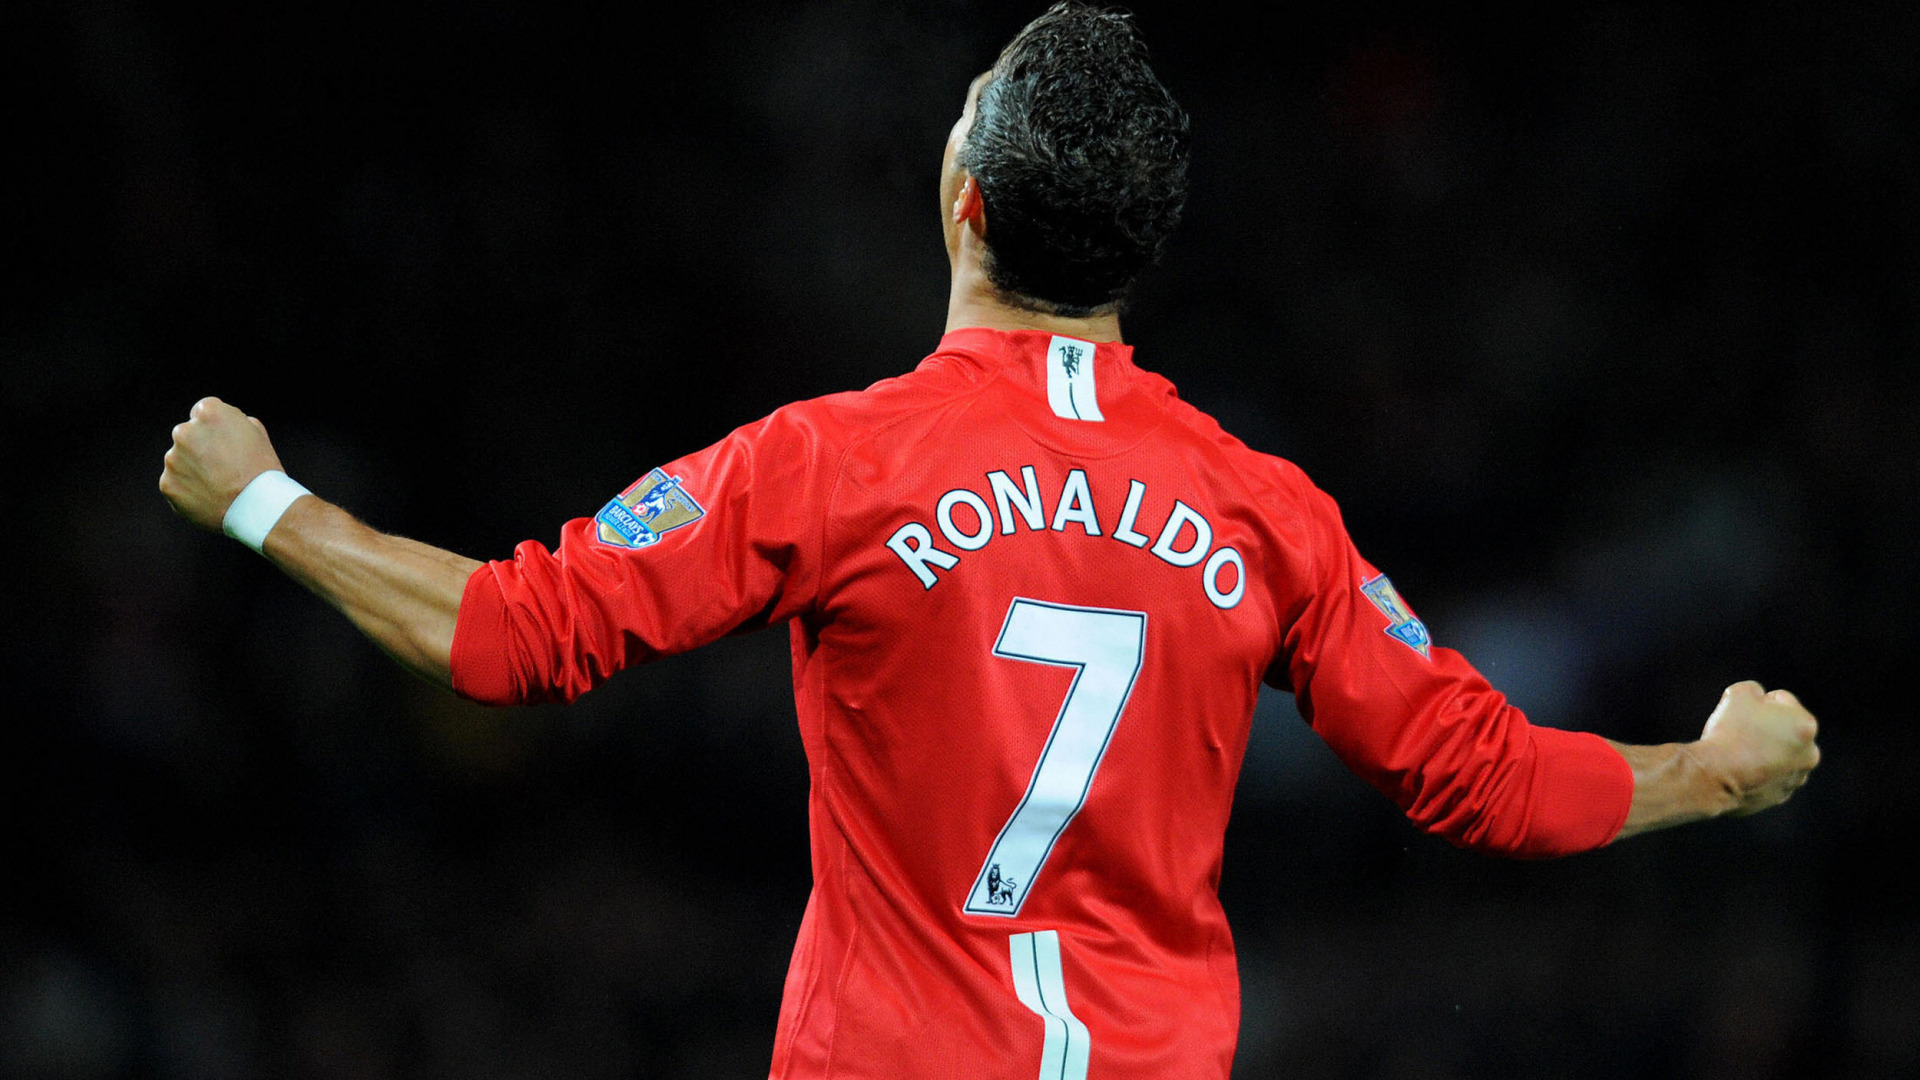 Роналду в "Манчестер Юнайтед", и знаменитая футболка с номером 7